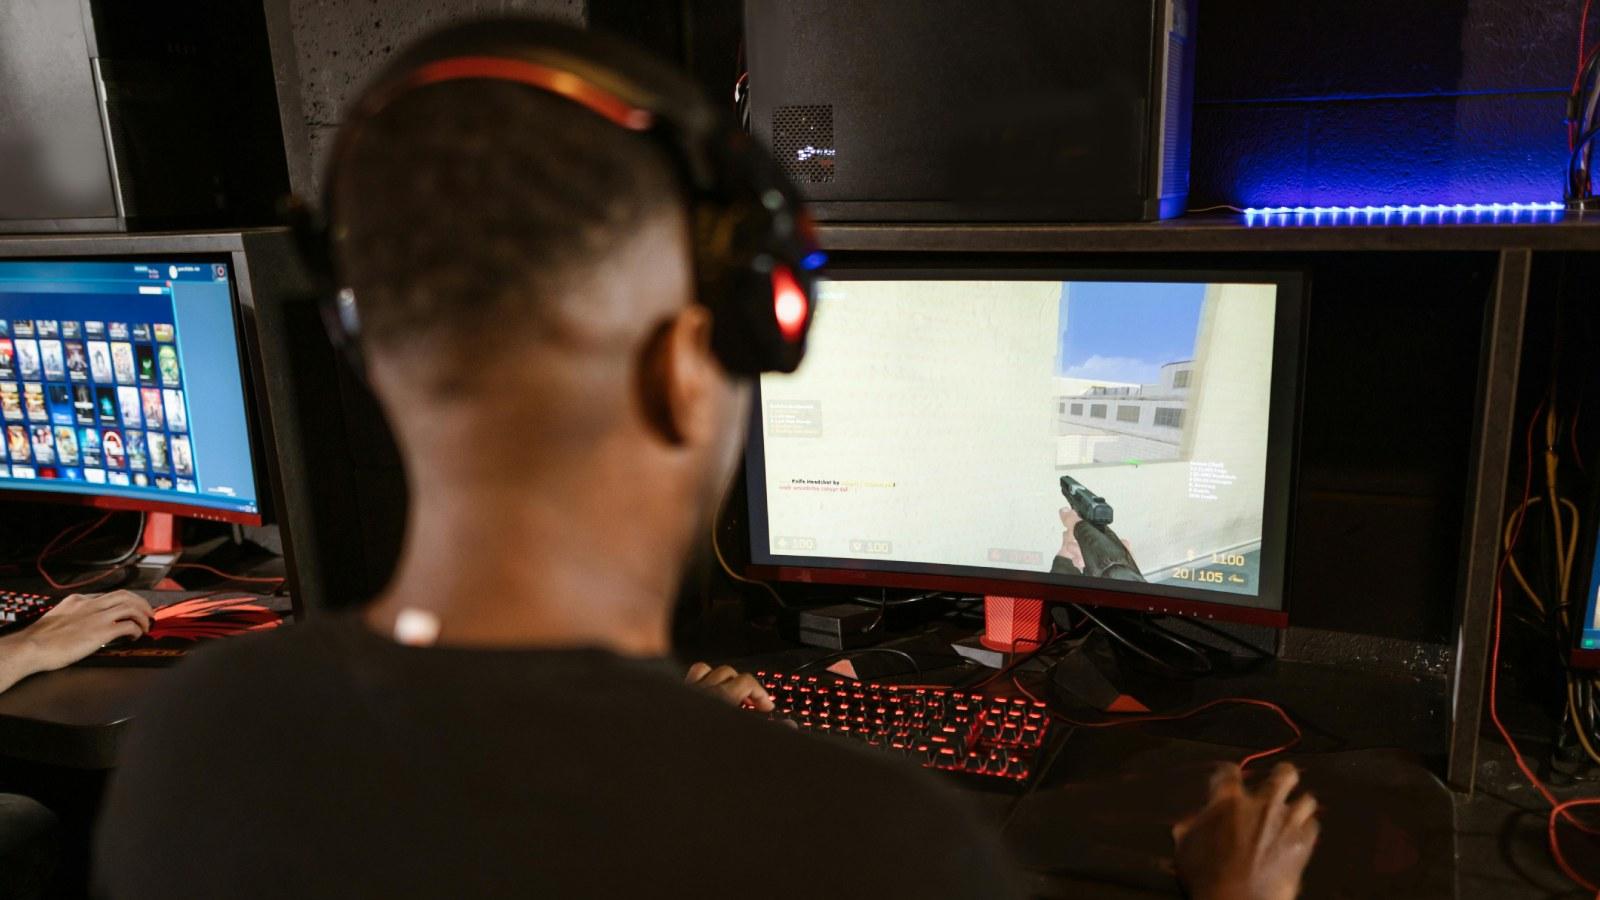 Man playing Counter Strike 2 at a gaming setup